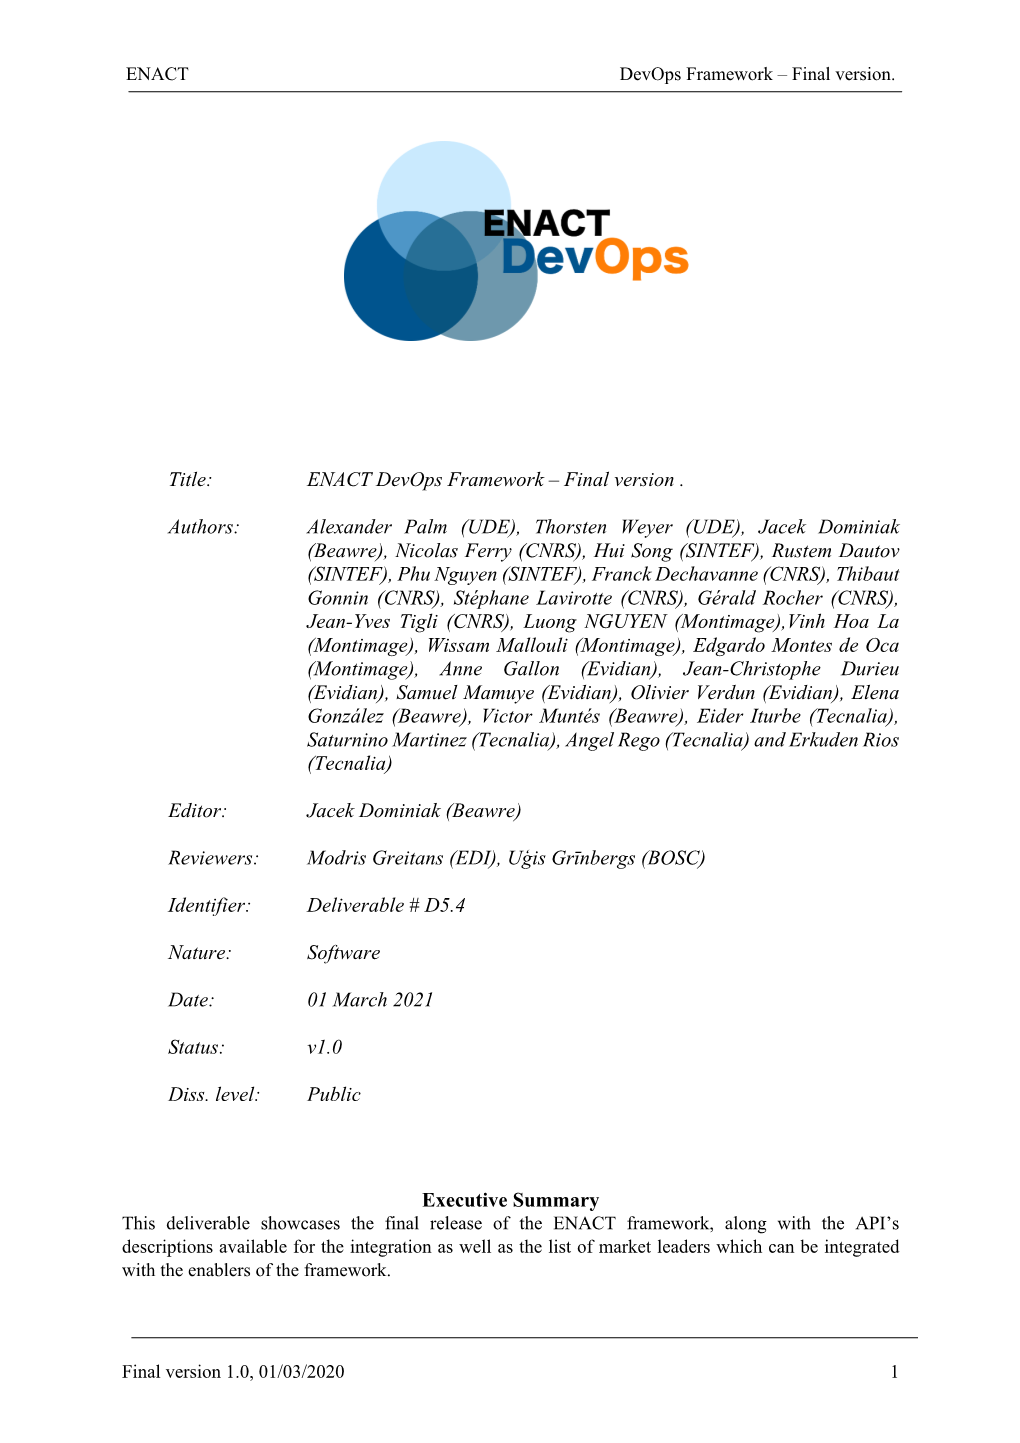 ENACT Devops Framework–Final Version